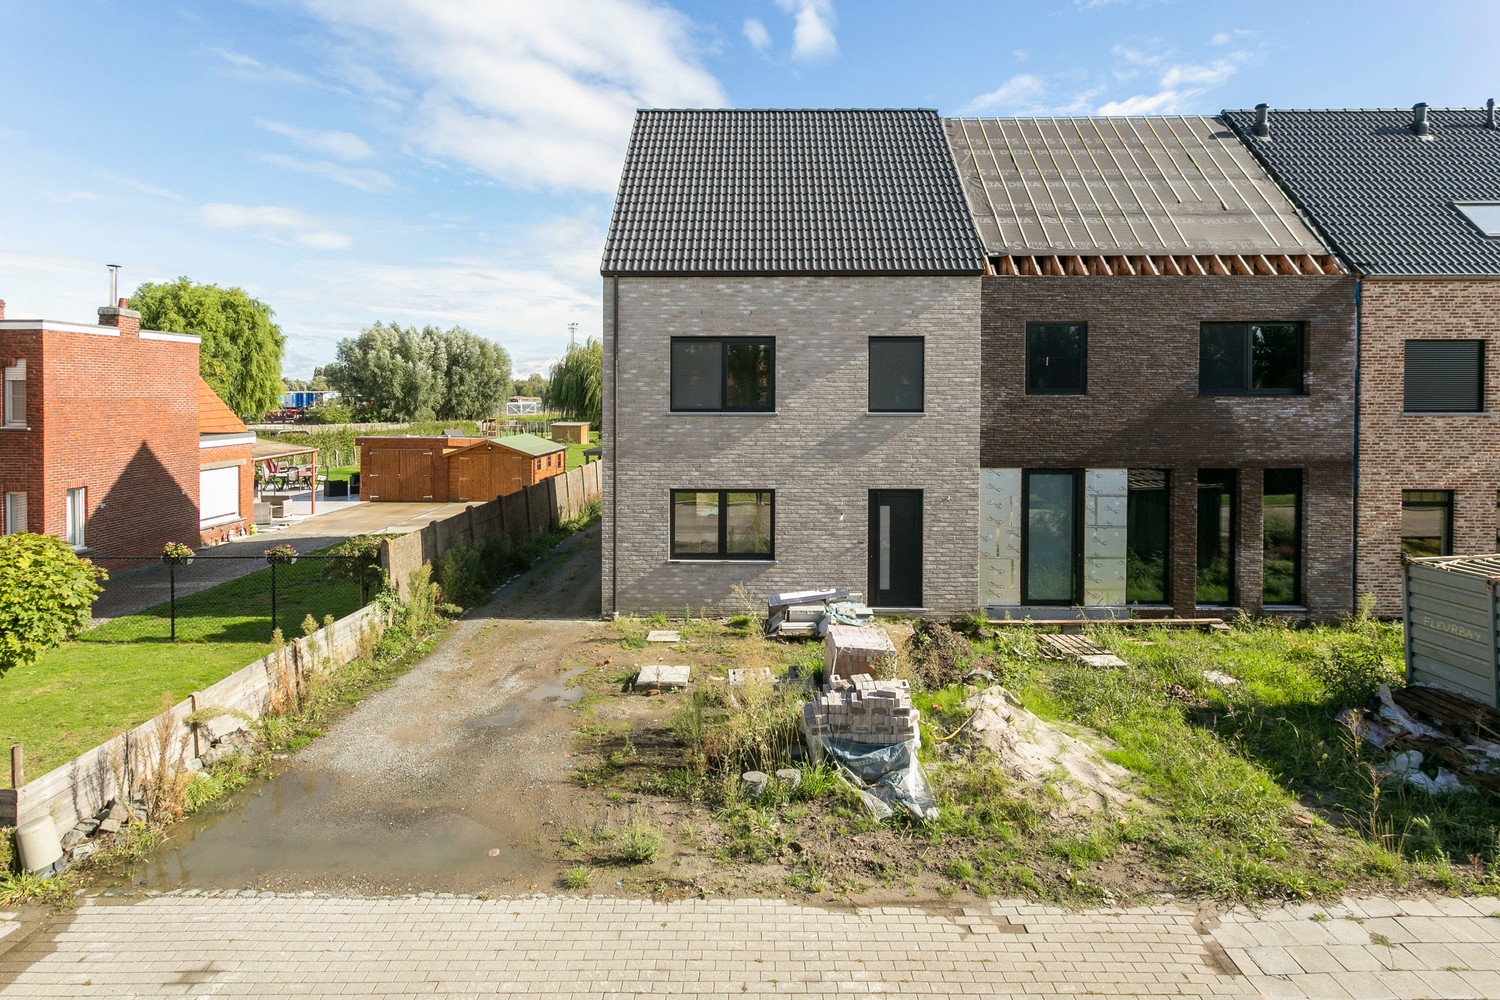 Gloednieuwe, energiezuinige woning met 3 slaapkamers & zonnige tuin in Koningshooikt! afbeelding 20